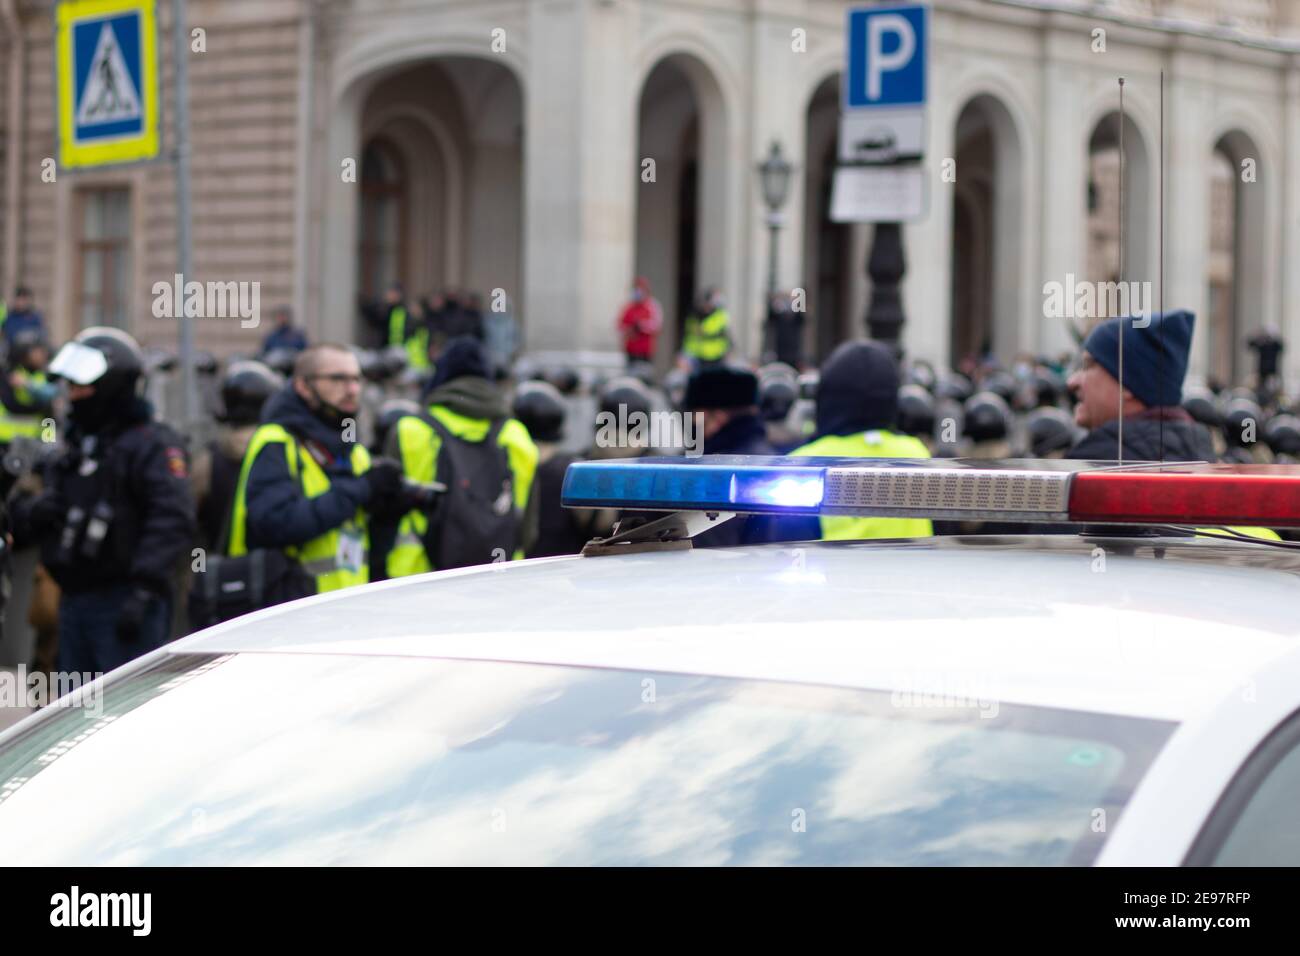 Saint-Pétersbourg, Russie - 31 janvier 2021 : voiture de police dans la rue avec sirène et militaire en arrière-plan, éditorial Banque D'Images